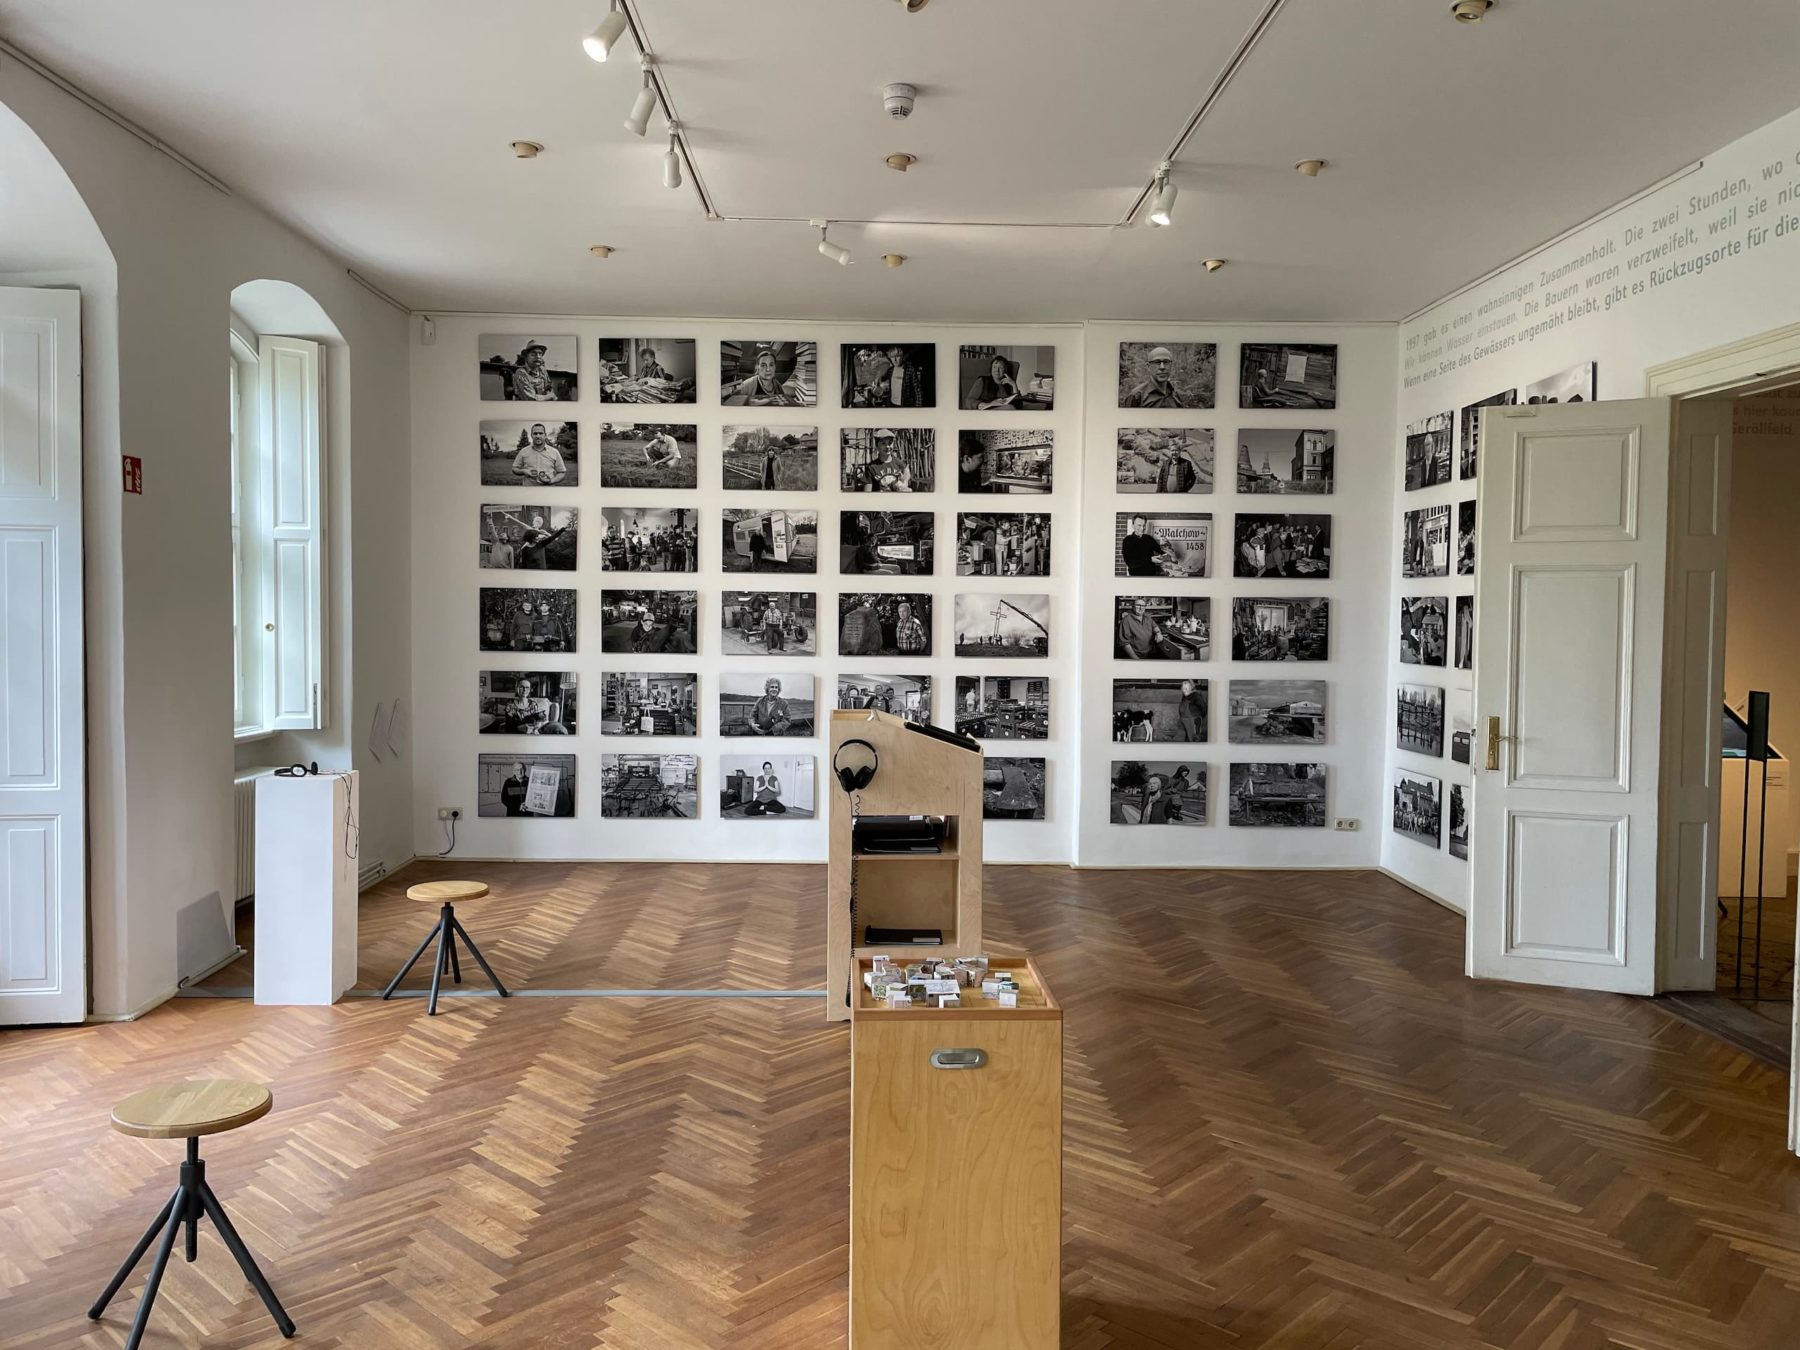 Raum mit vielen schwarz-weiß Bildern an den Wänden, links und rechts sind weiße Türen zu sehen, die offen stehen.